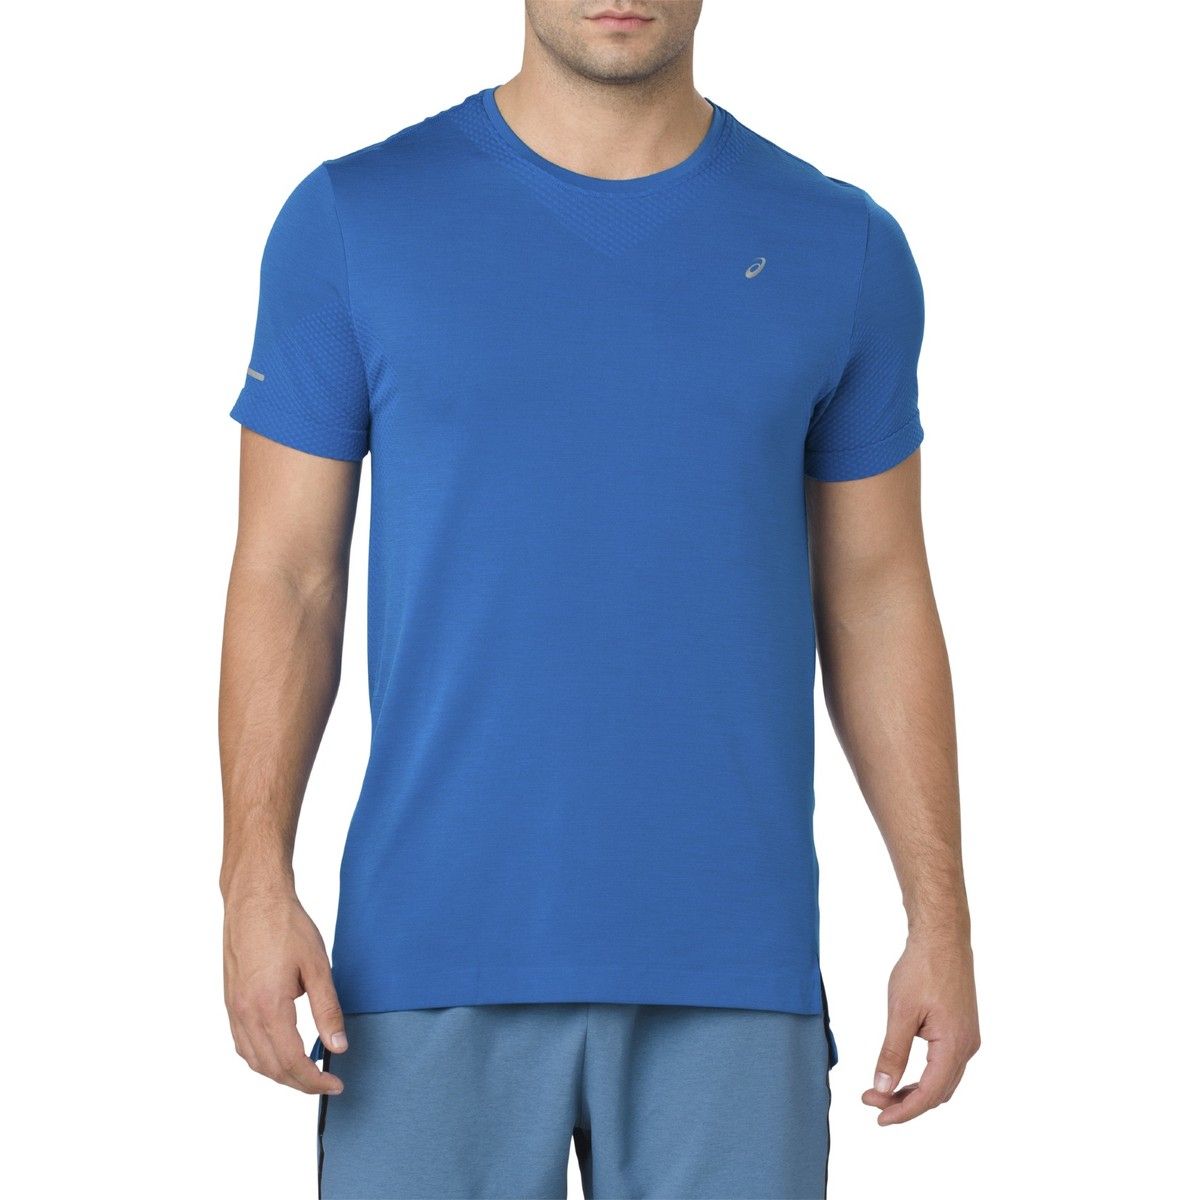 Asics Seamless Men's Graphic T-Shirt 2011A287-750